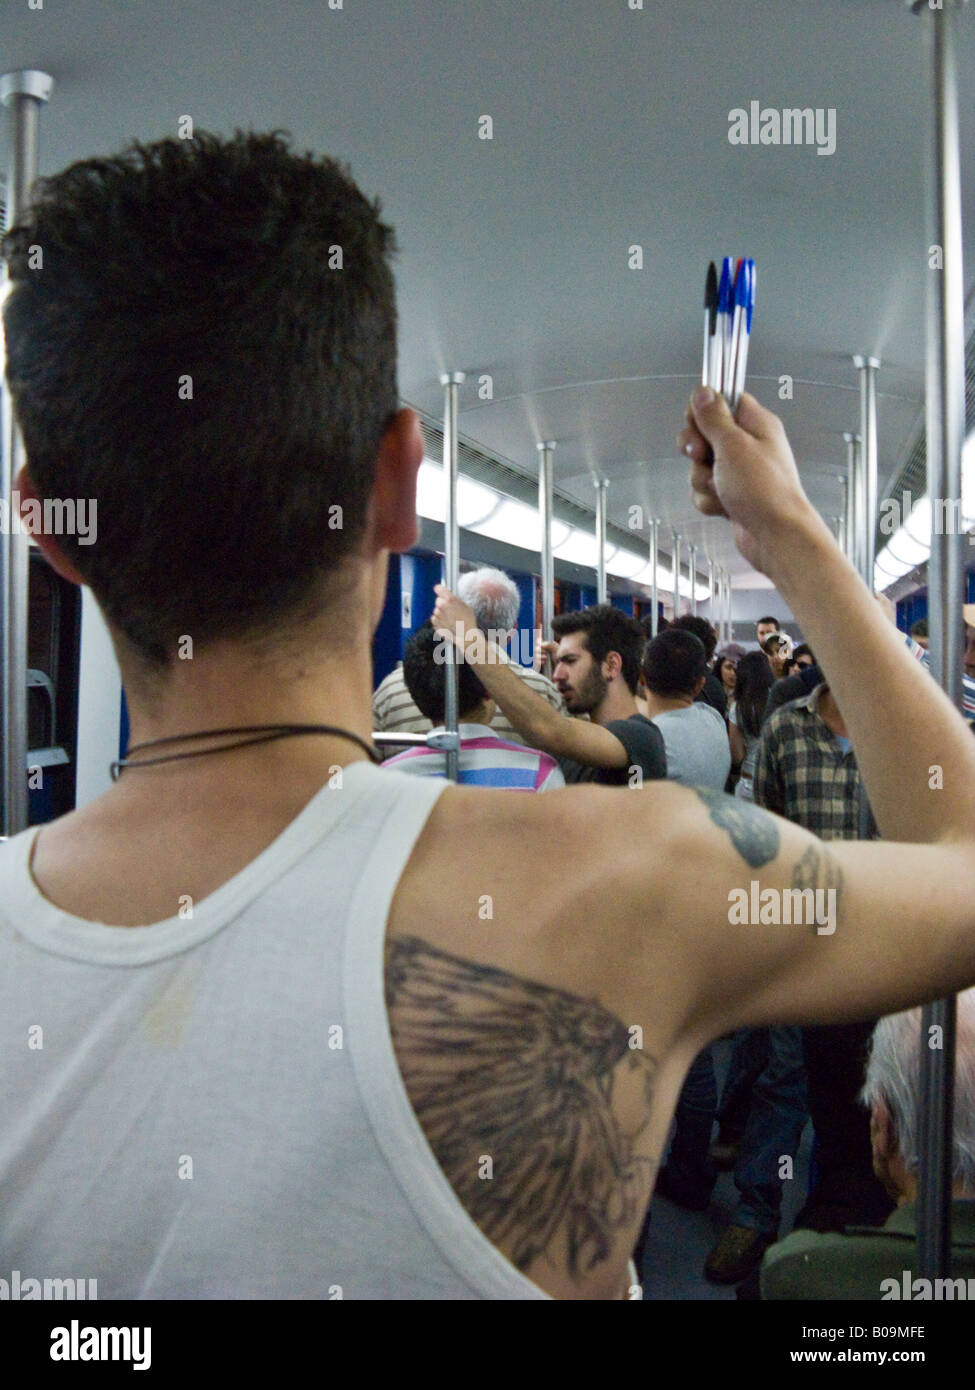 ballpoint pen seller on Athens metro Stock Photo